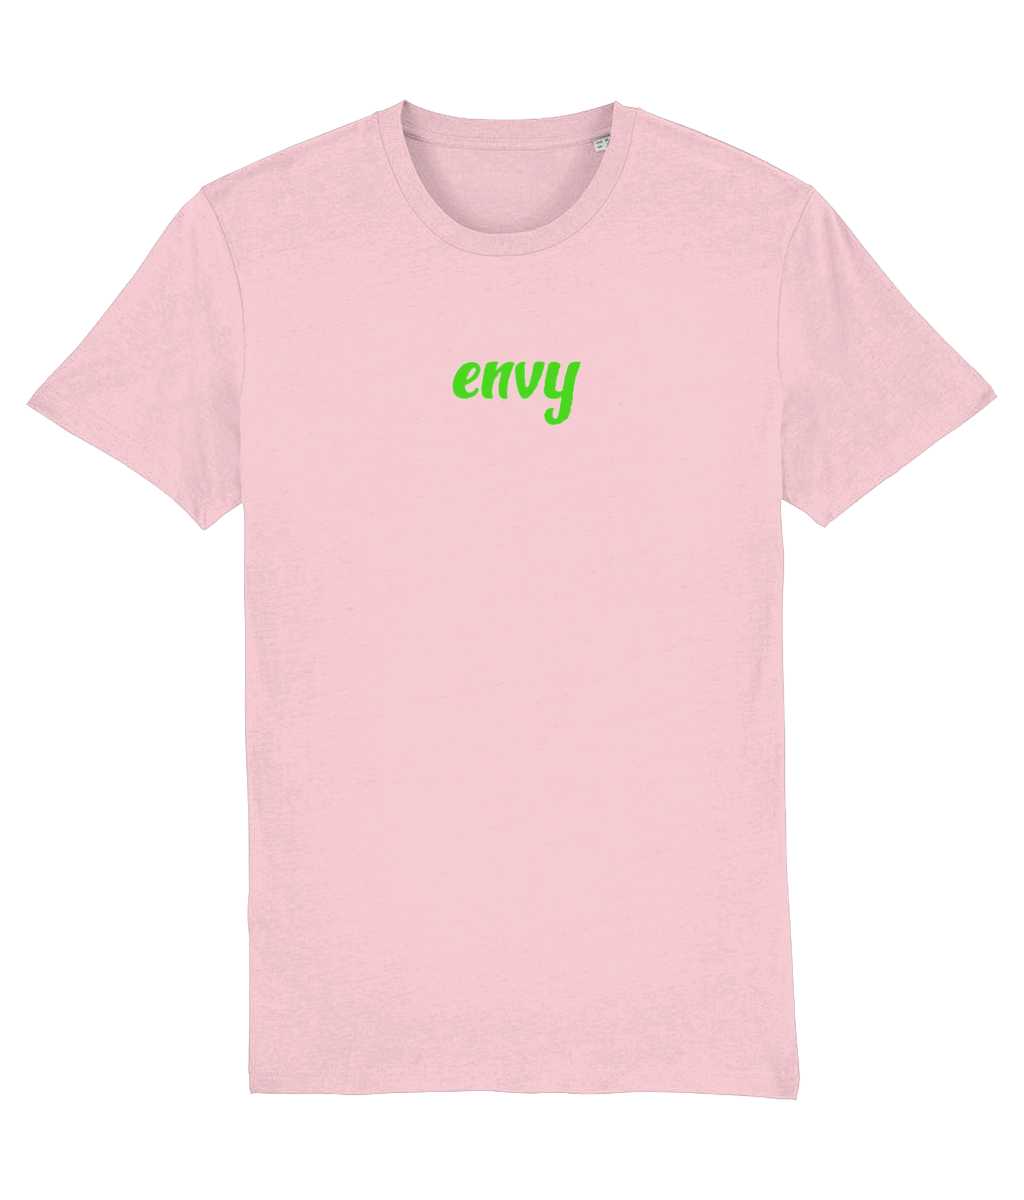 Envy non gender t-shirt Cherchez La Femme brand